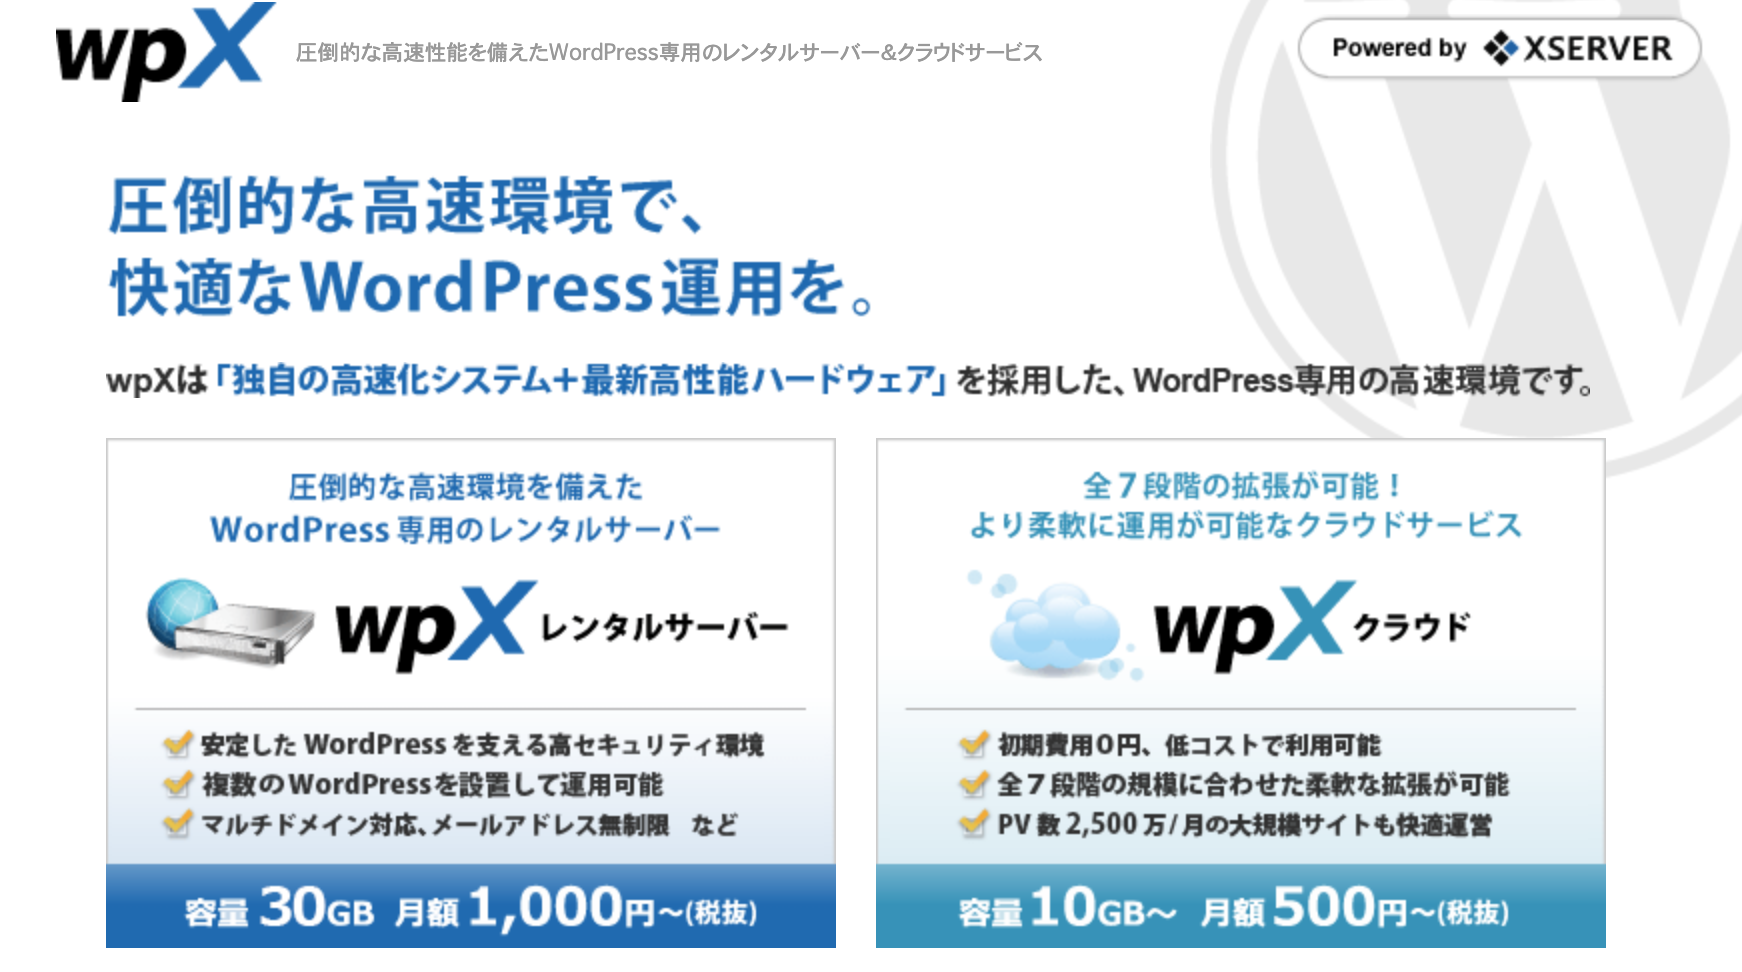 WordPressの運用に特化したレンタルサーバー『wpXレンタルサーバー』